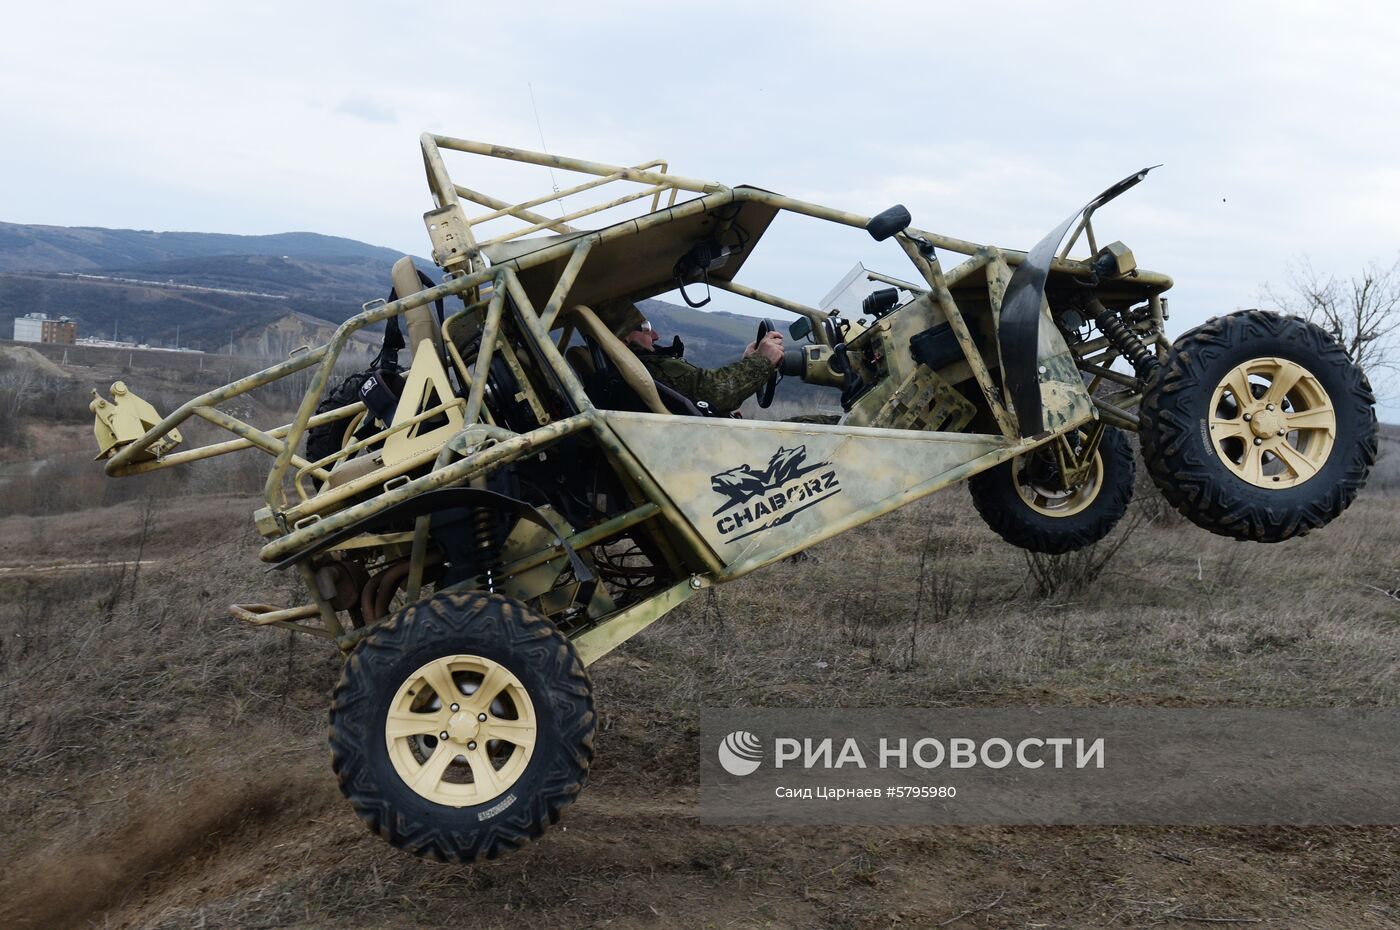 В Чечне запустили полный цикл серийного производства вездеходов "Чаборз М-3"